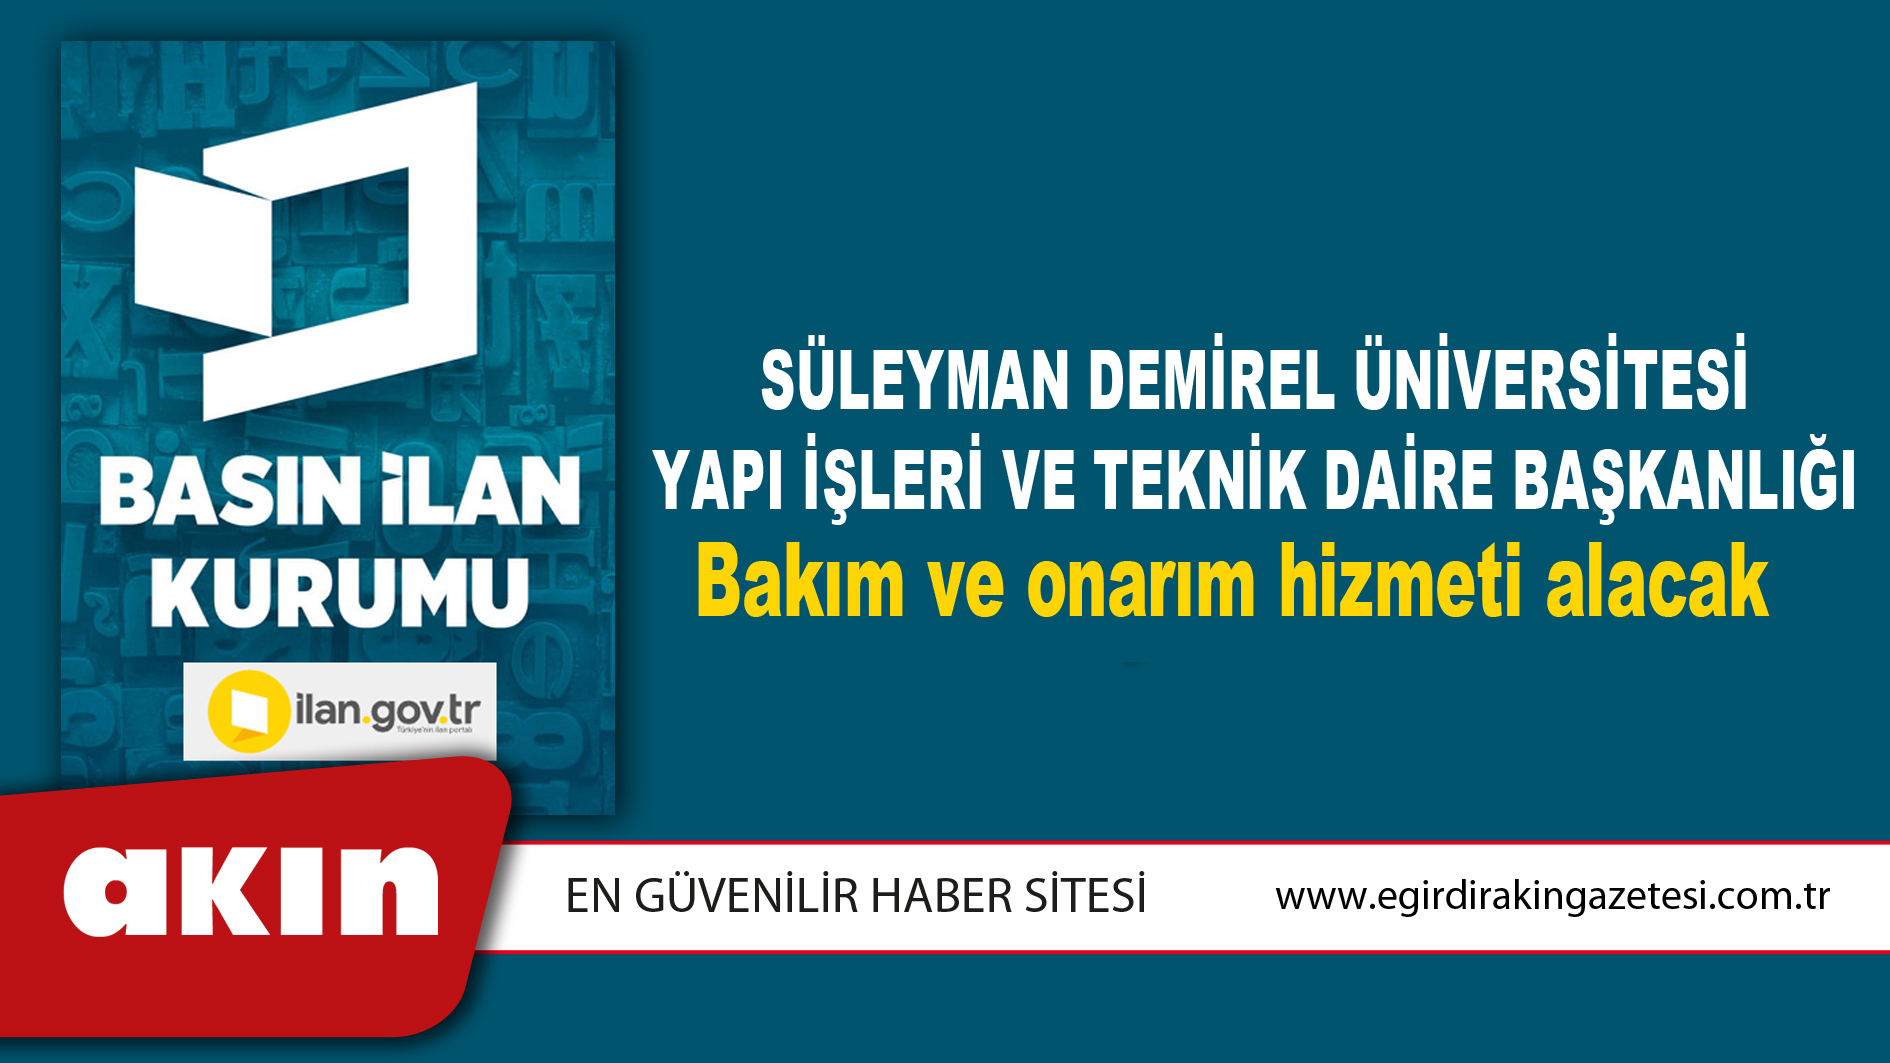 Süleyman Demirel Üniversitesi Yapı İşleri Ve Teknik Daire Başkanlığı Bakım ve onarım hizmeti alacak